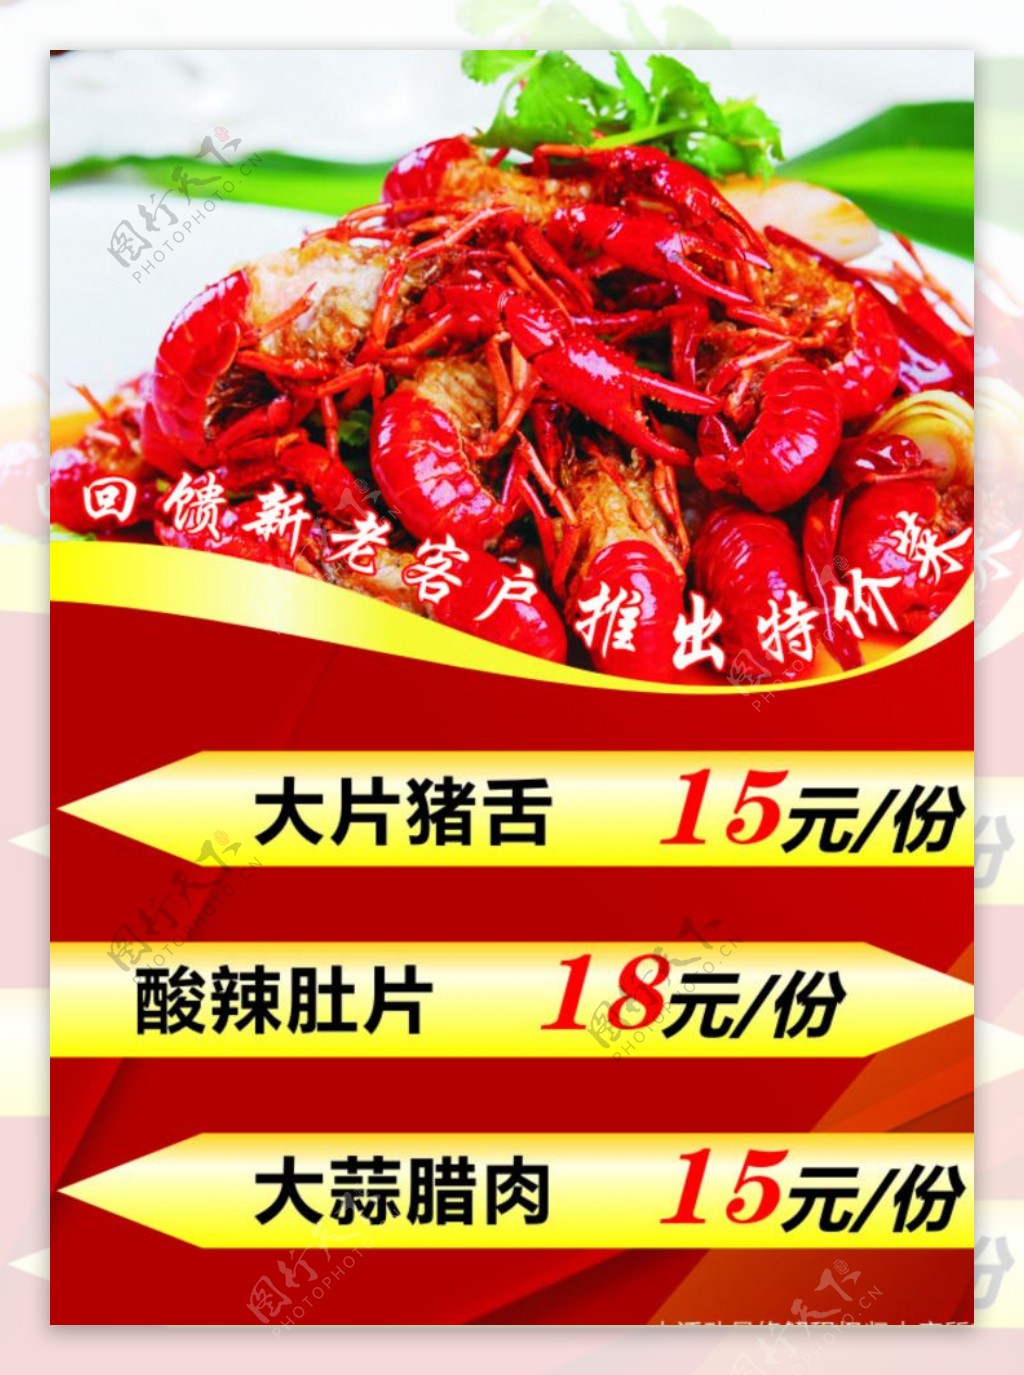 餐饮龙虾优惠活动特价图片